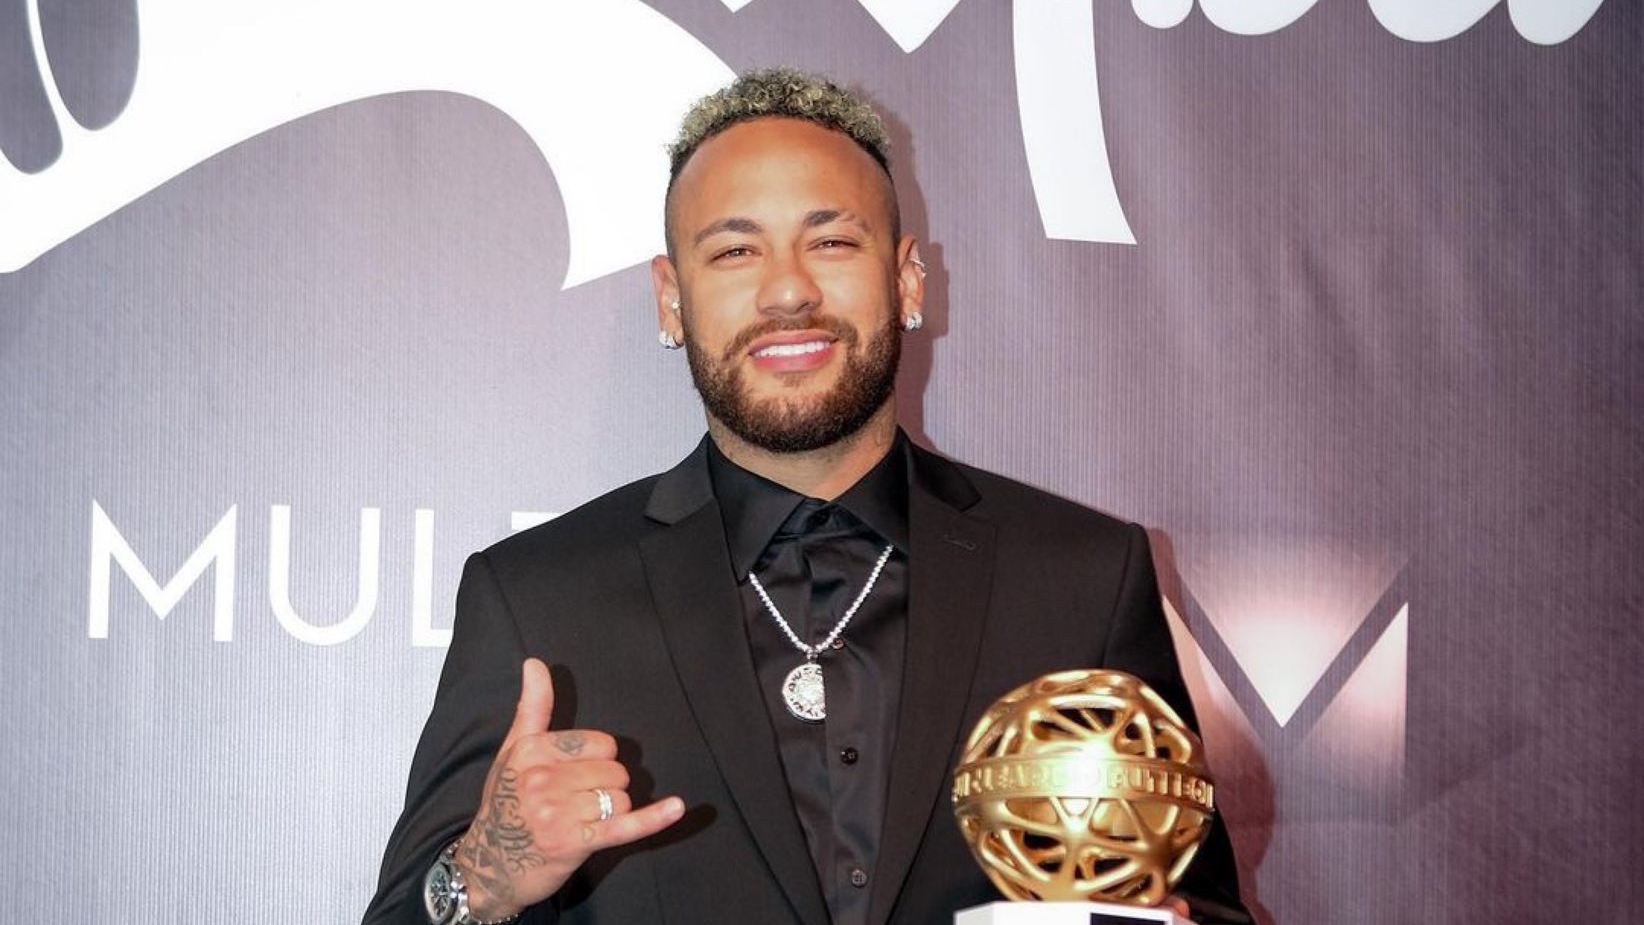 Após traição, Neymar ironiza exposição: 'Mais alguém?'